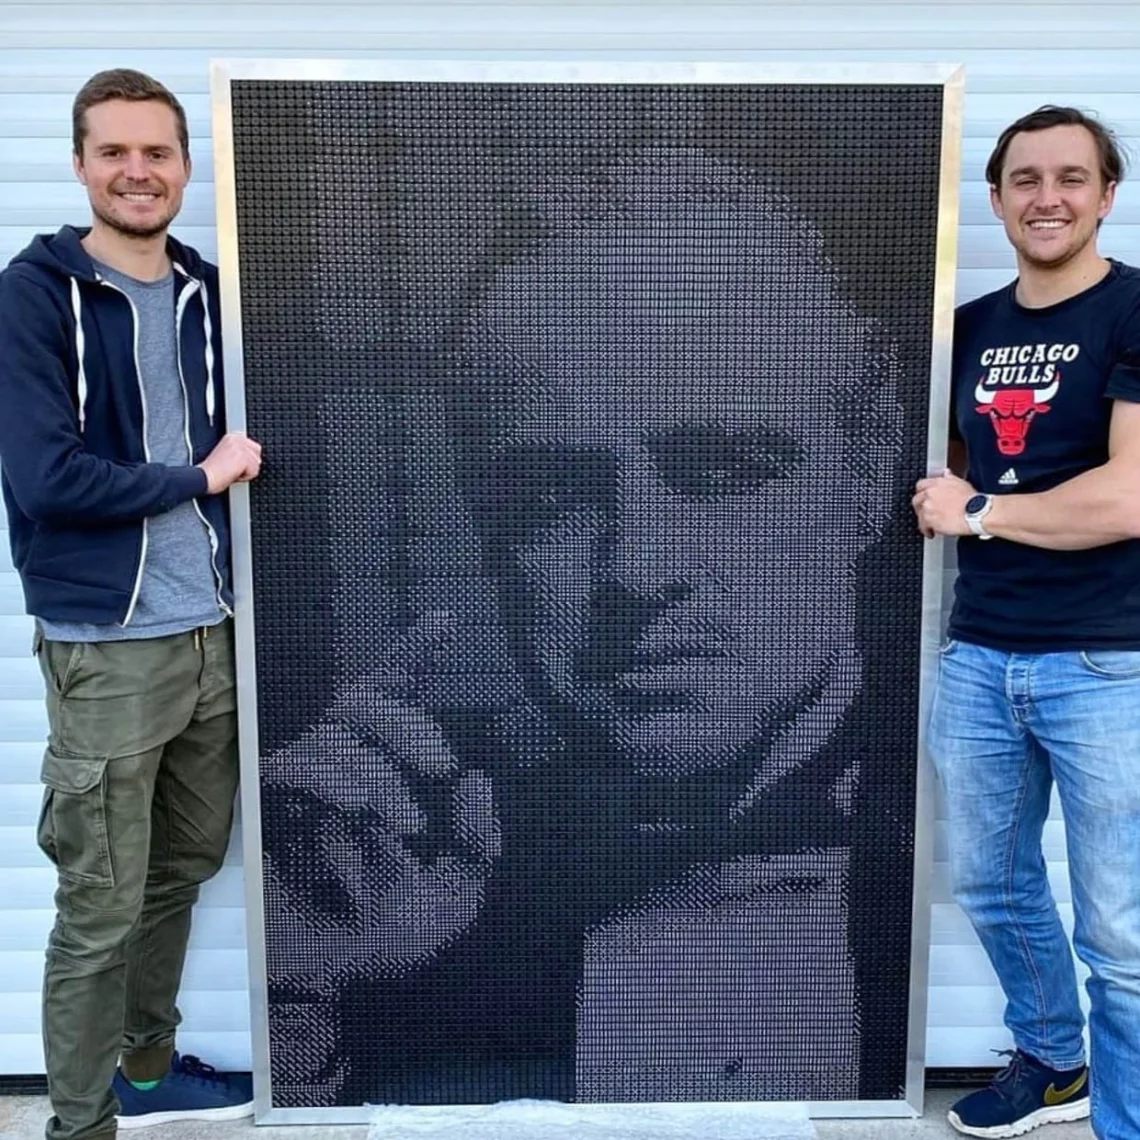 Two men standing beside a large monochrome mosaic portrait art piece.